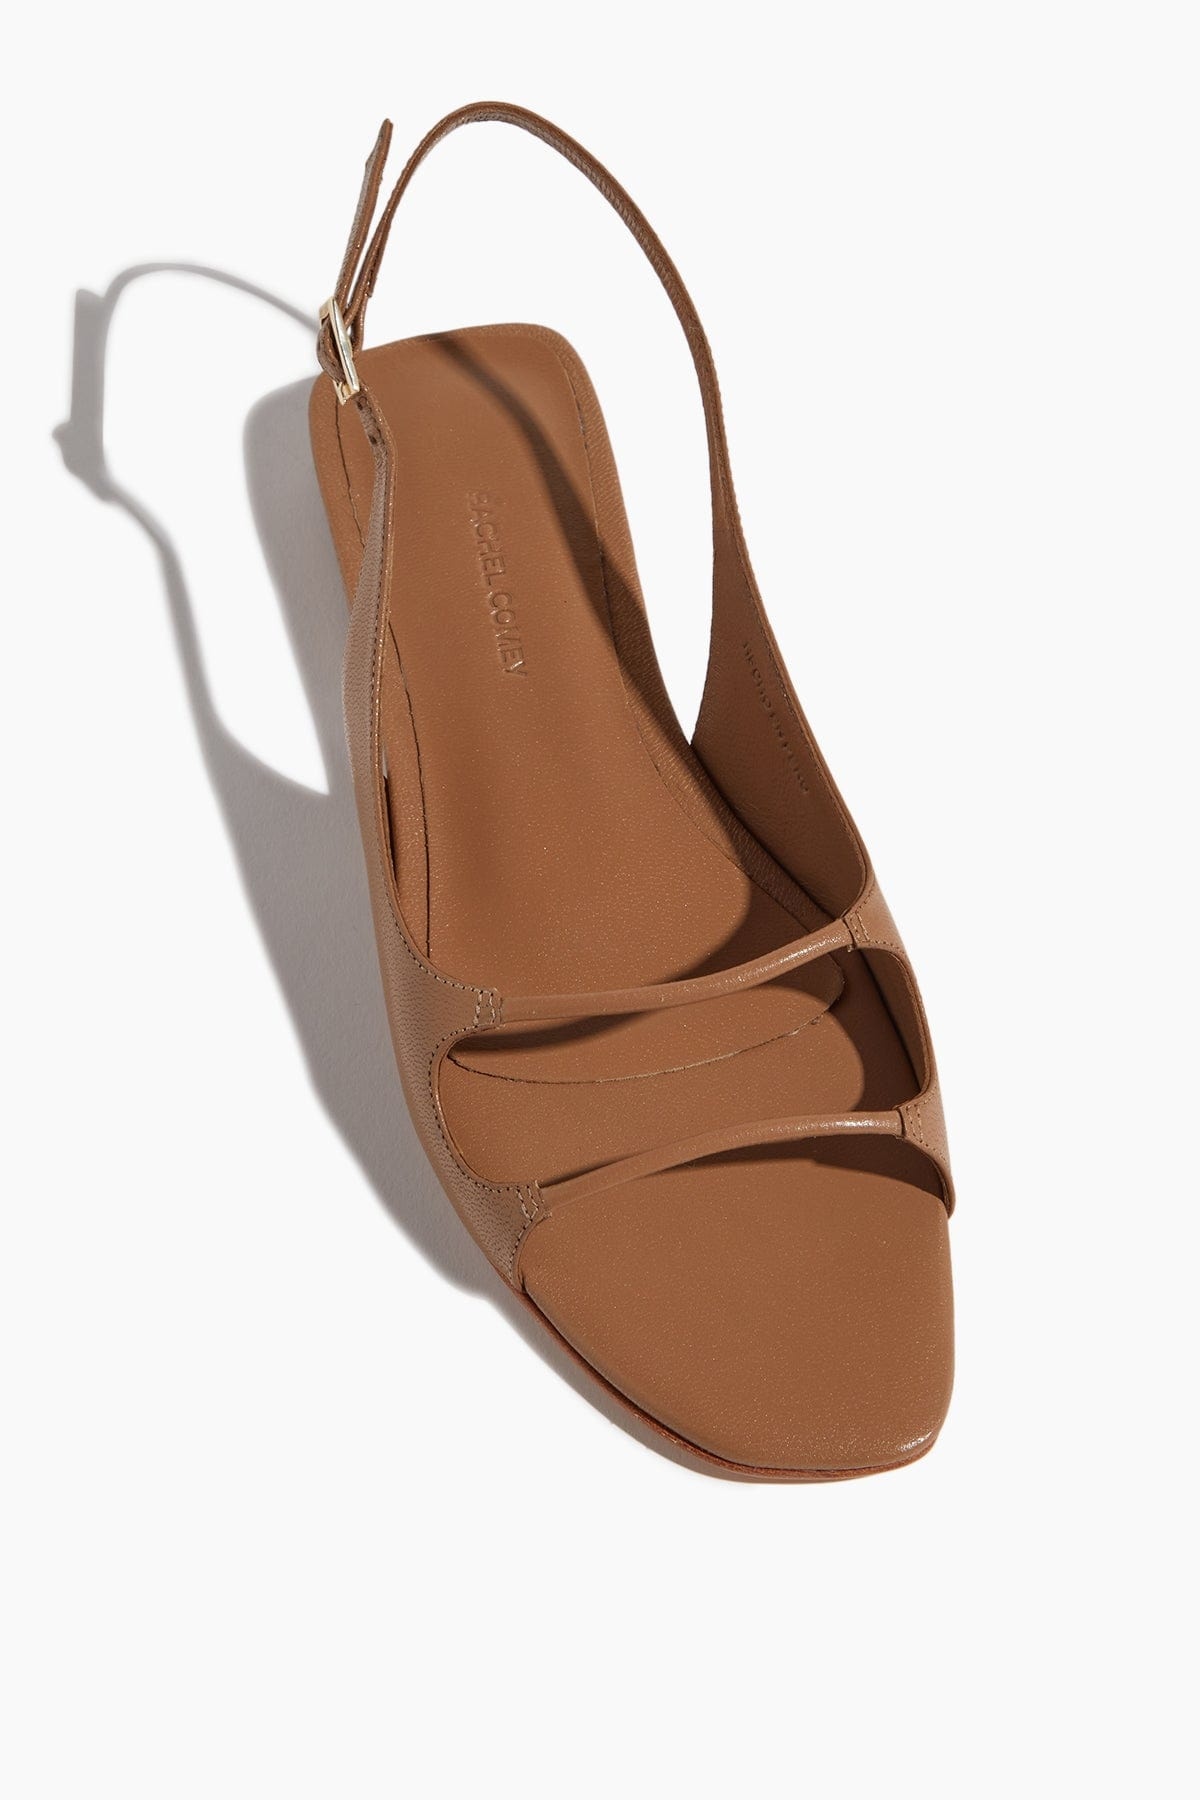 Veluza Sandal in Cocoa - 4